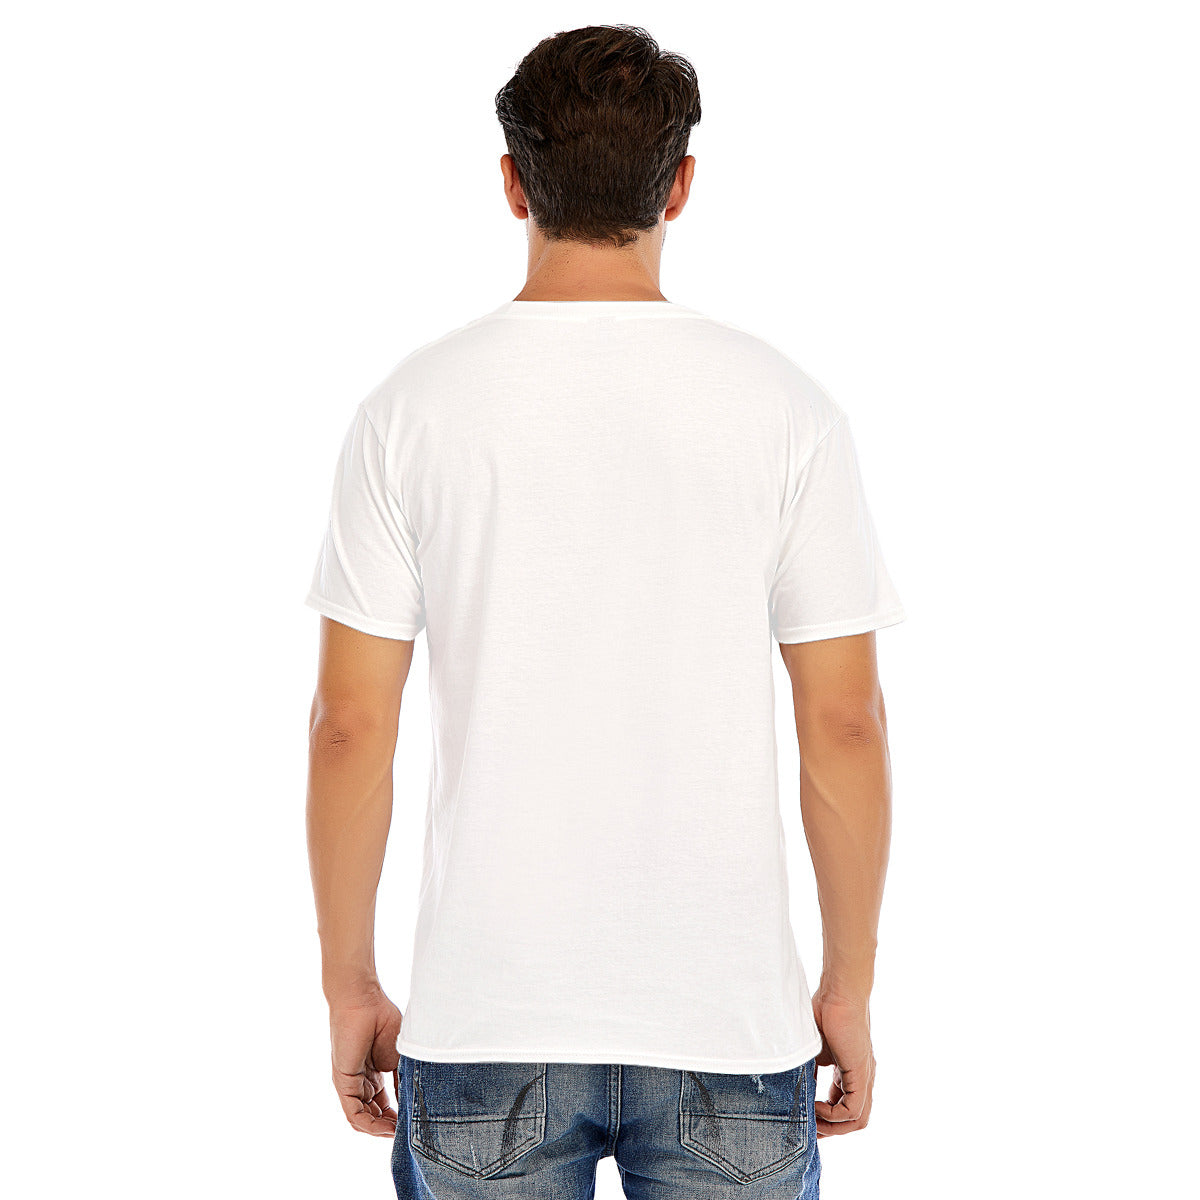 Fantasy 136 -- Unisex O-neck Short Sleeve T-shirt